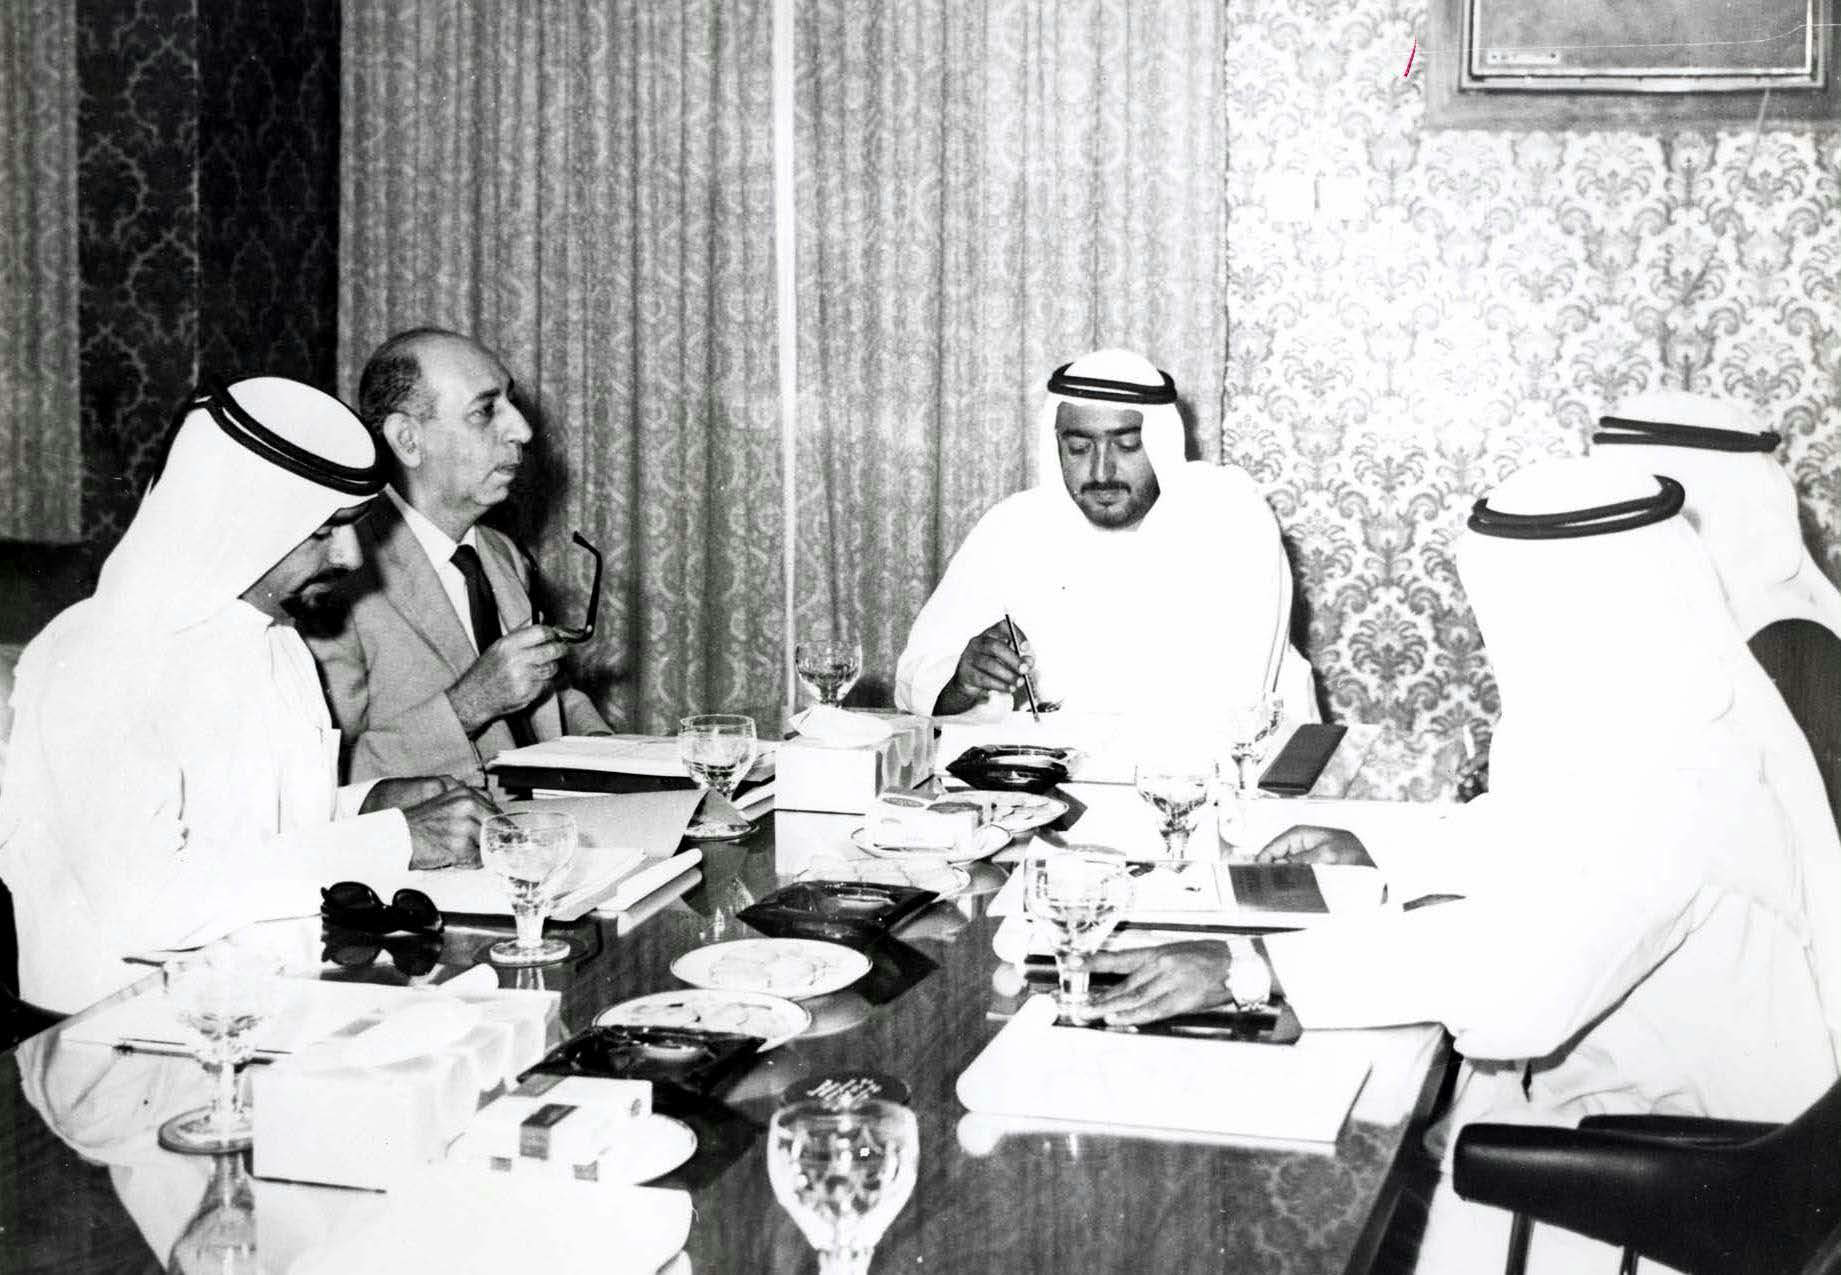 الإمارات في عهد خليفة.. مسيرة رائدة في مجالات العمل الإنمائي والتنمية الاقتصادية محلياً وعالمياً